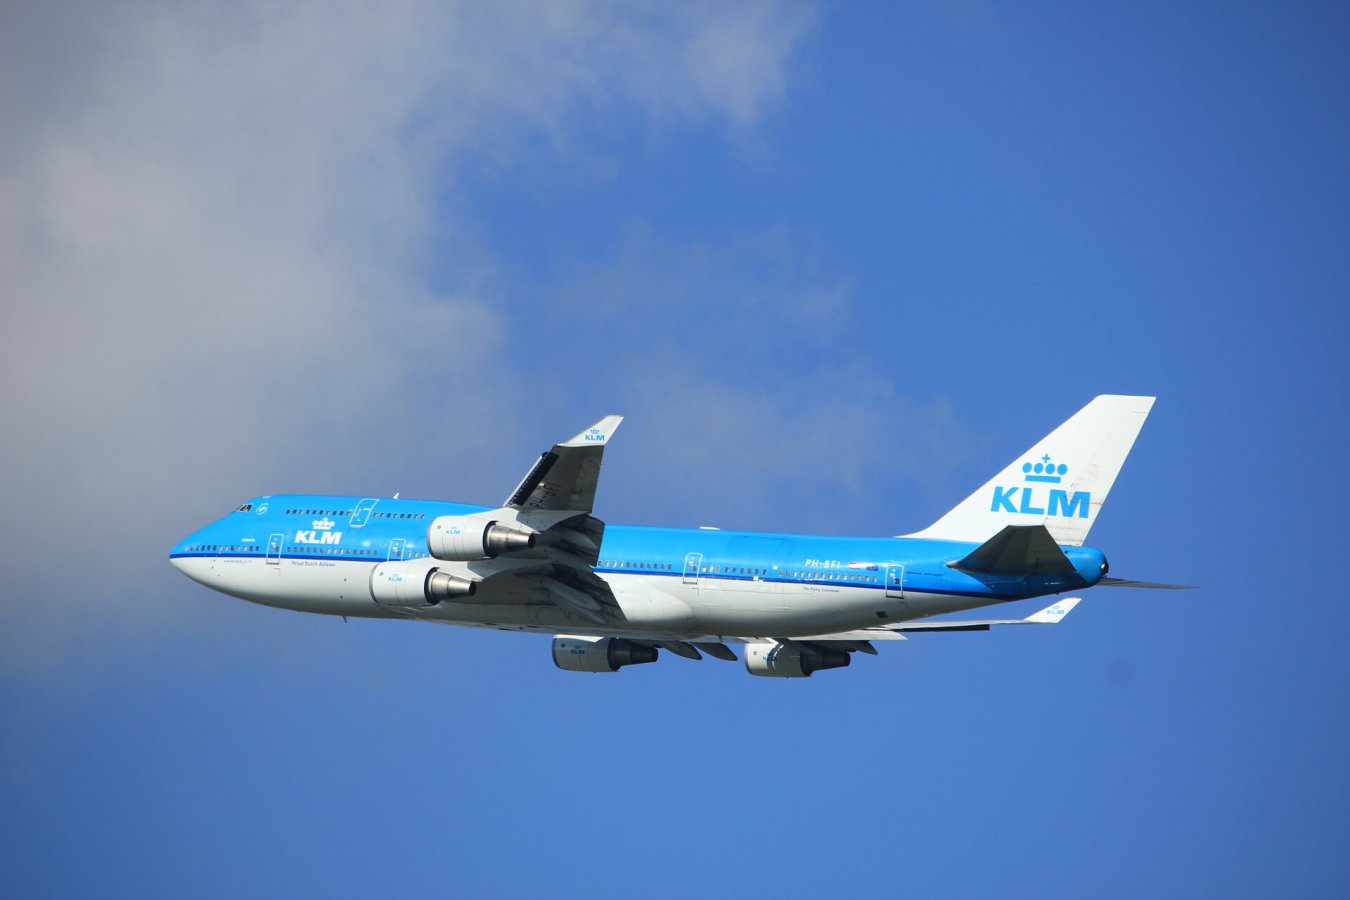 دعوى قضائية ضد شركة الخطوط الجوية الهولندية KLM بشأن "غسيل البيئة"